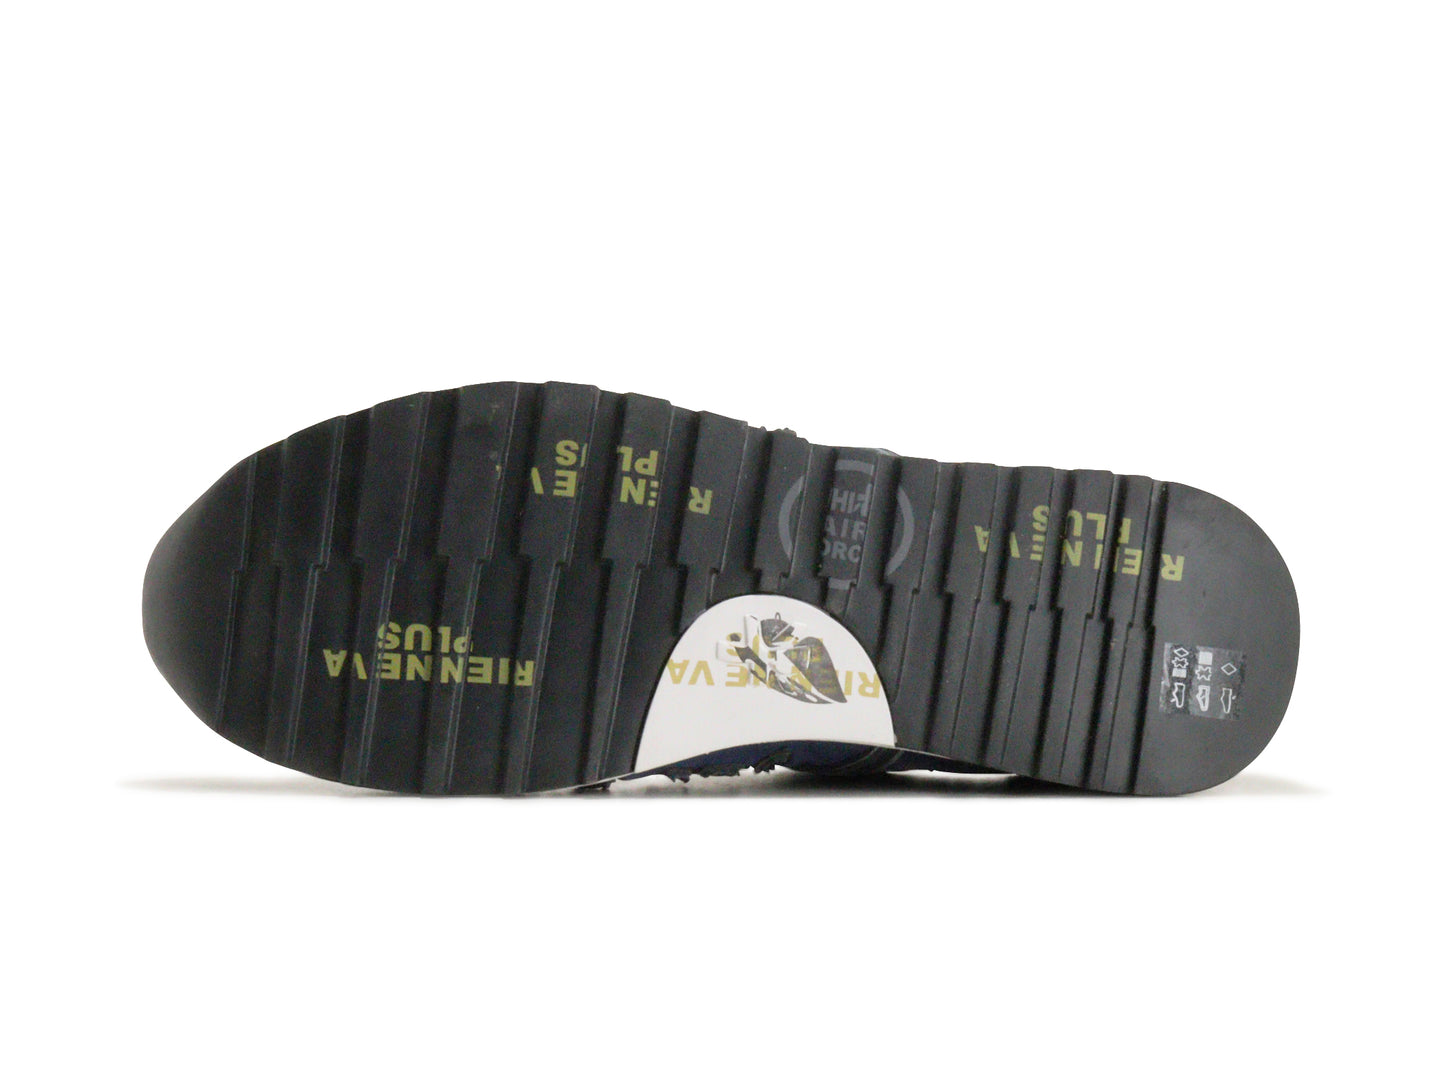 PREMIATAのスニーカー「3815」の靴底の商品画像